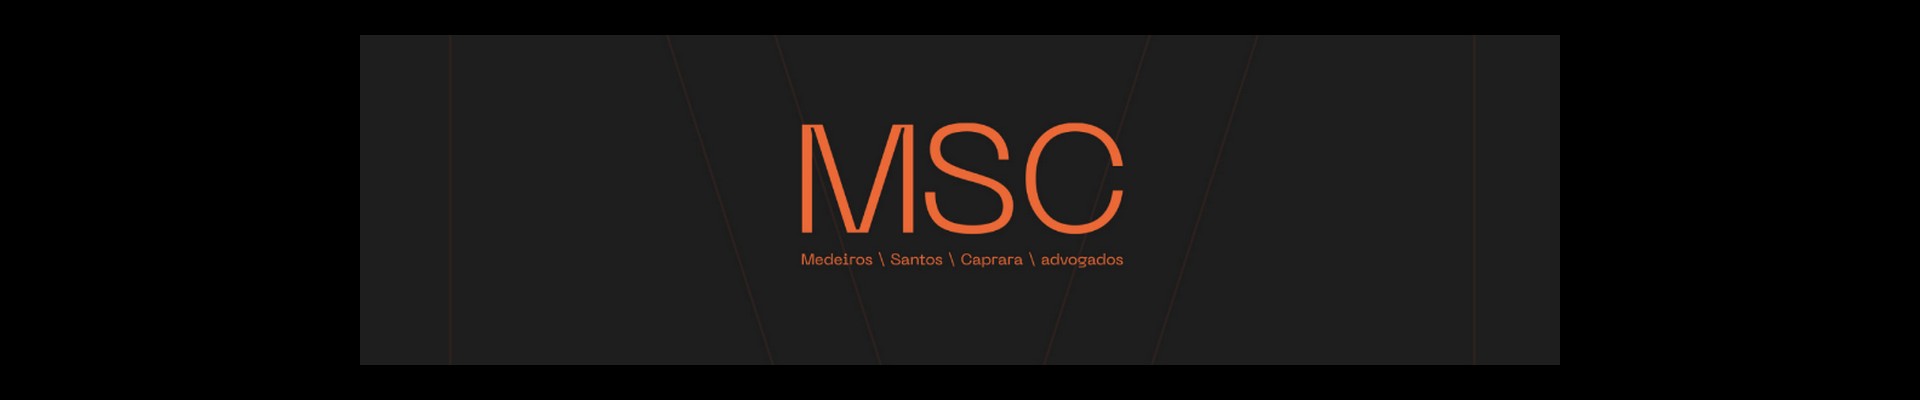 Agência Nirin assina nova marca da MSC Advogados